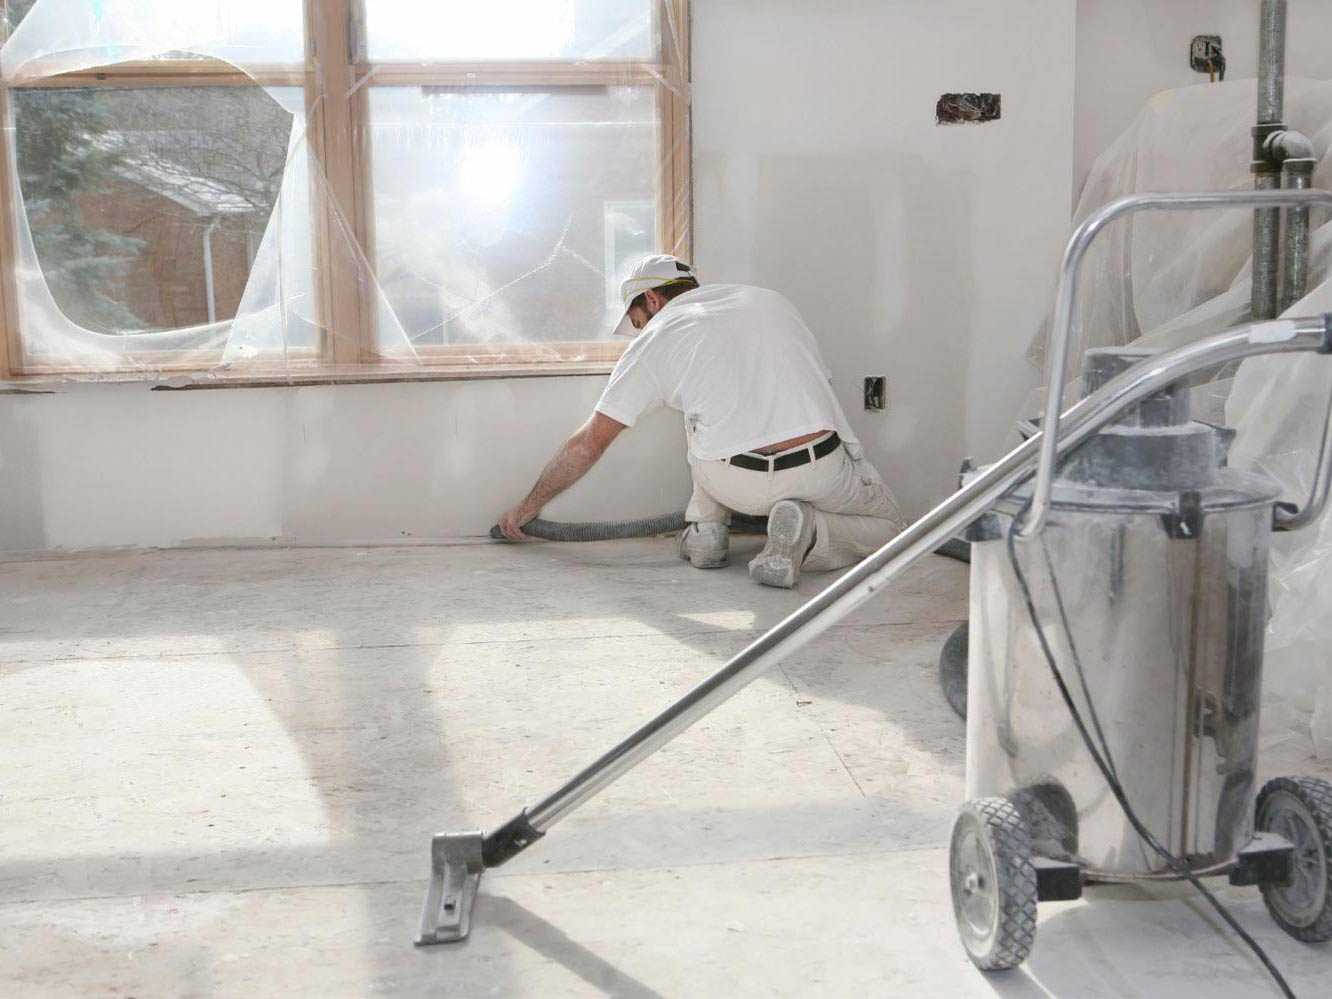 Все способы, как убрать строительную пыль со стен и потолка после проведенных работ